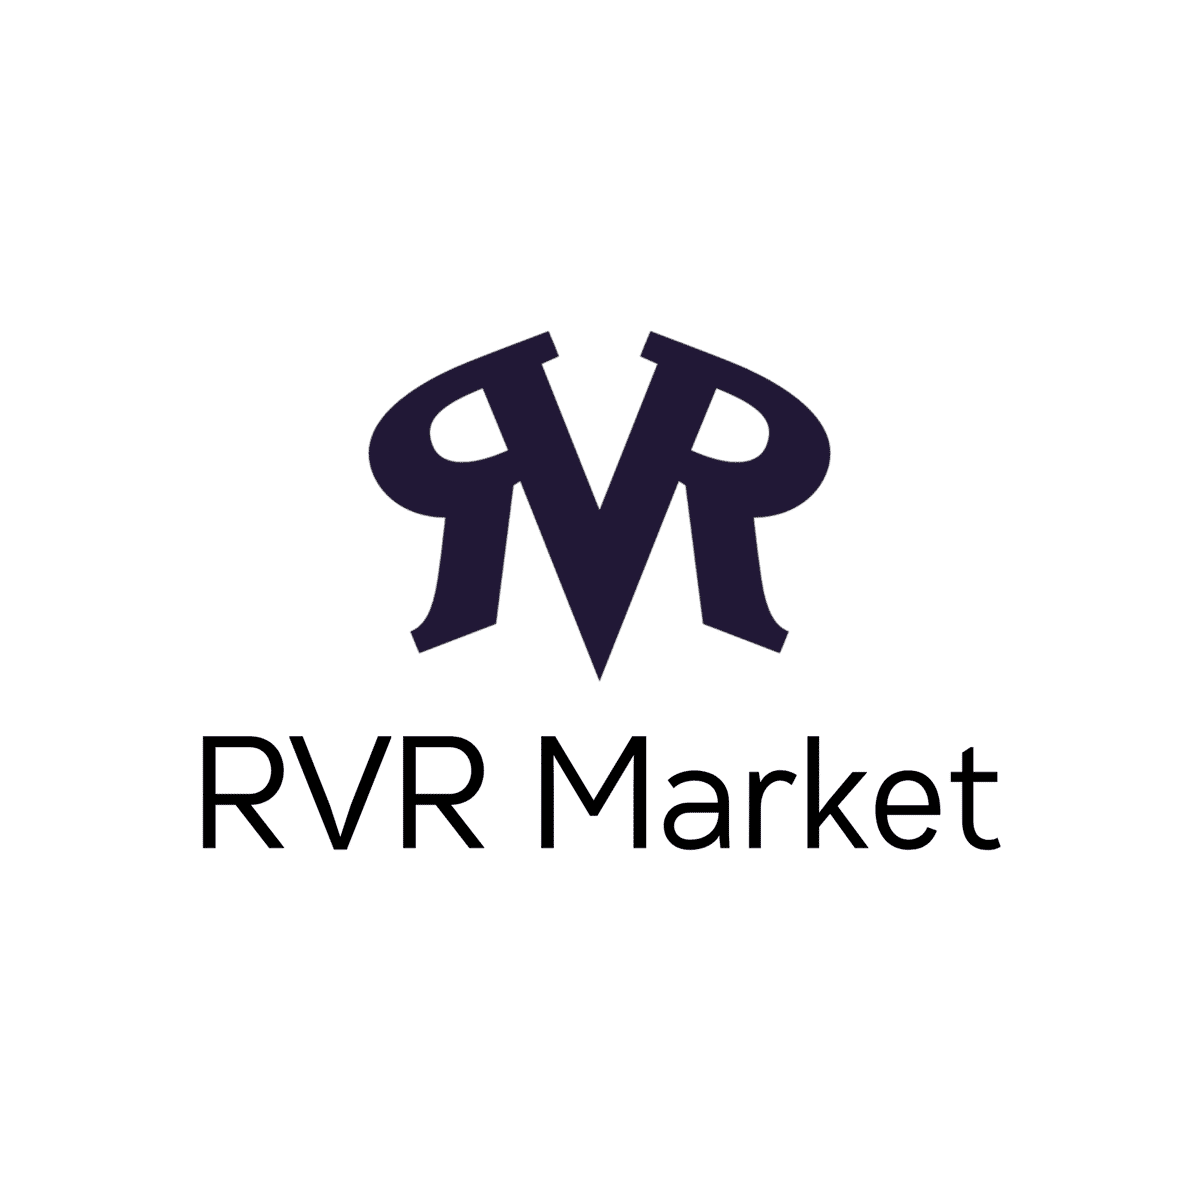 Rvr Market